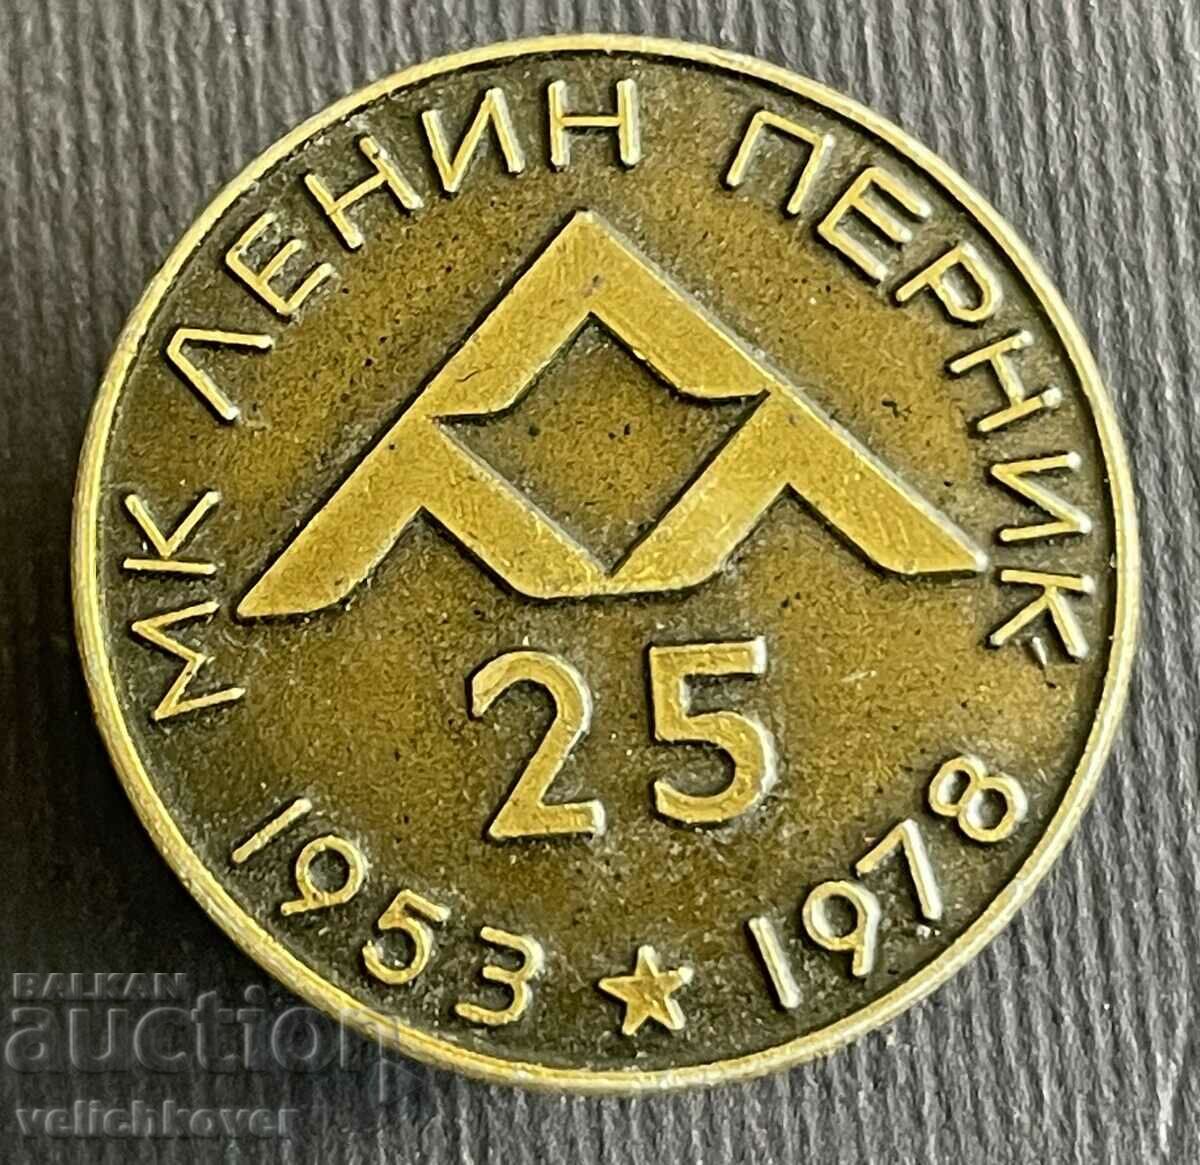 37084 Bulgaria sign 25 years Lenin Pernik Metallurgical Plant